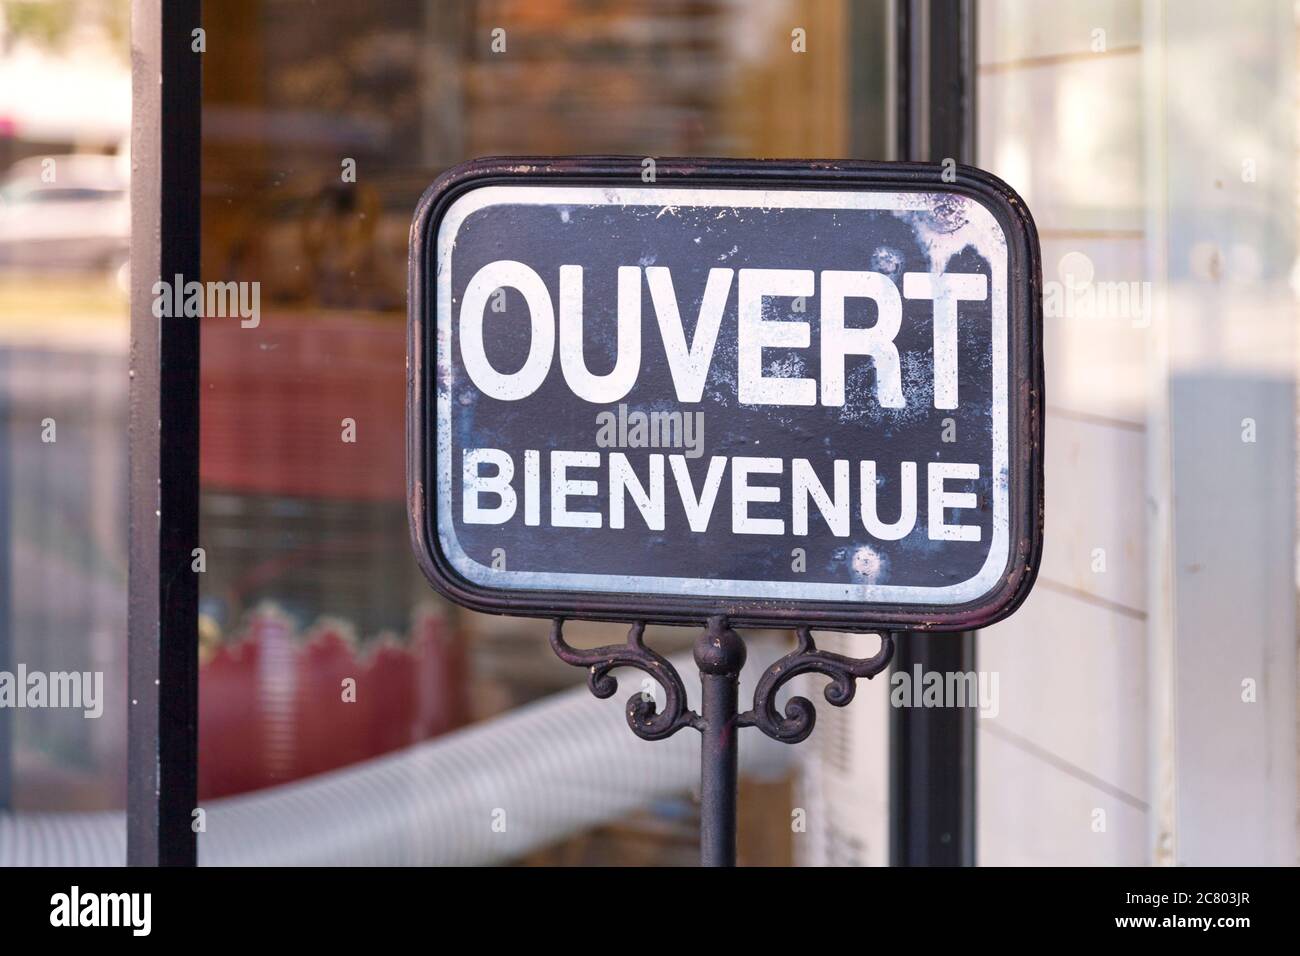 Affiche extérieure ouverte avec écrit en français 'Ouvert, bienvenue' signifiant en anglais 'Open, Welcome'. Banque D'Images